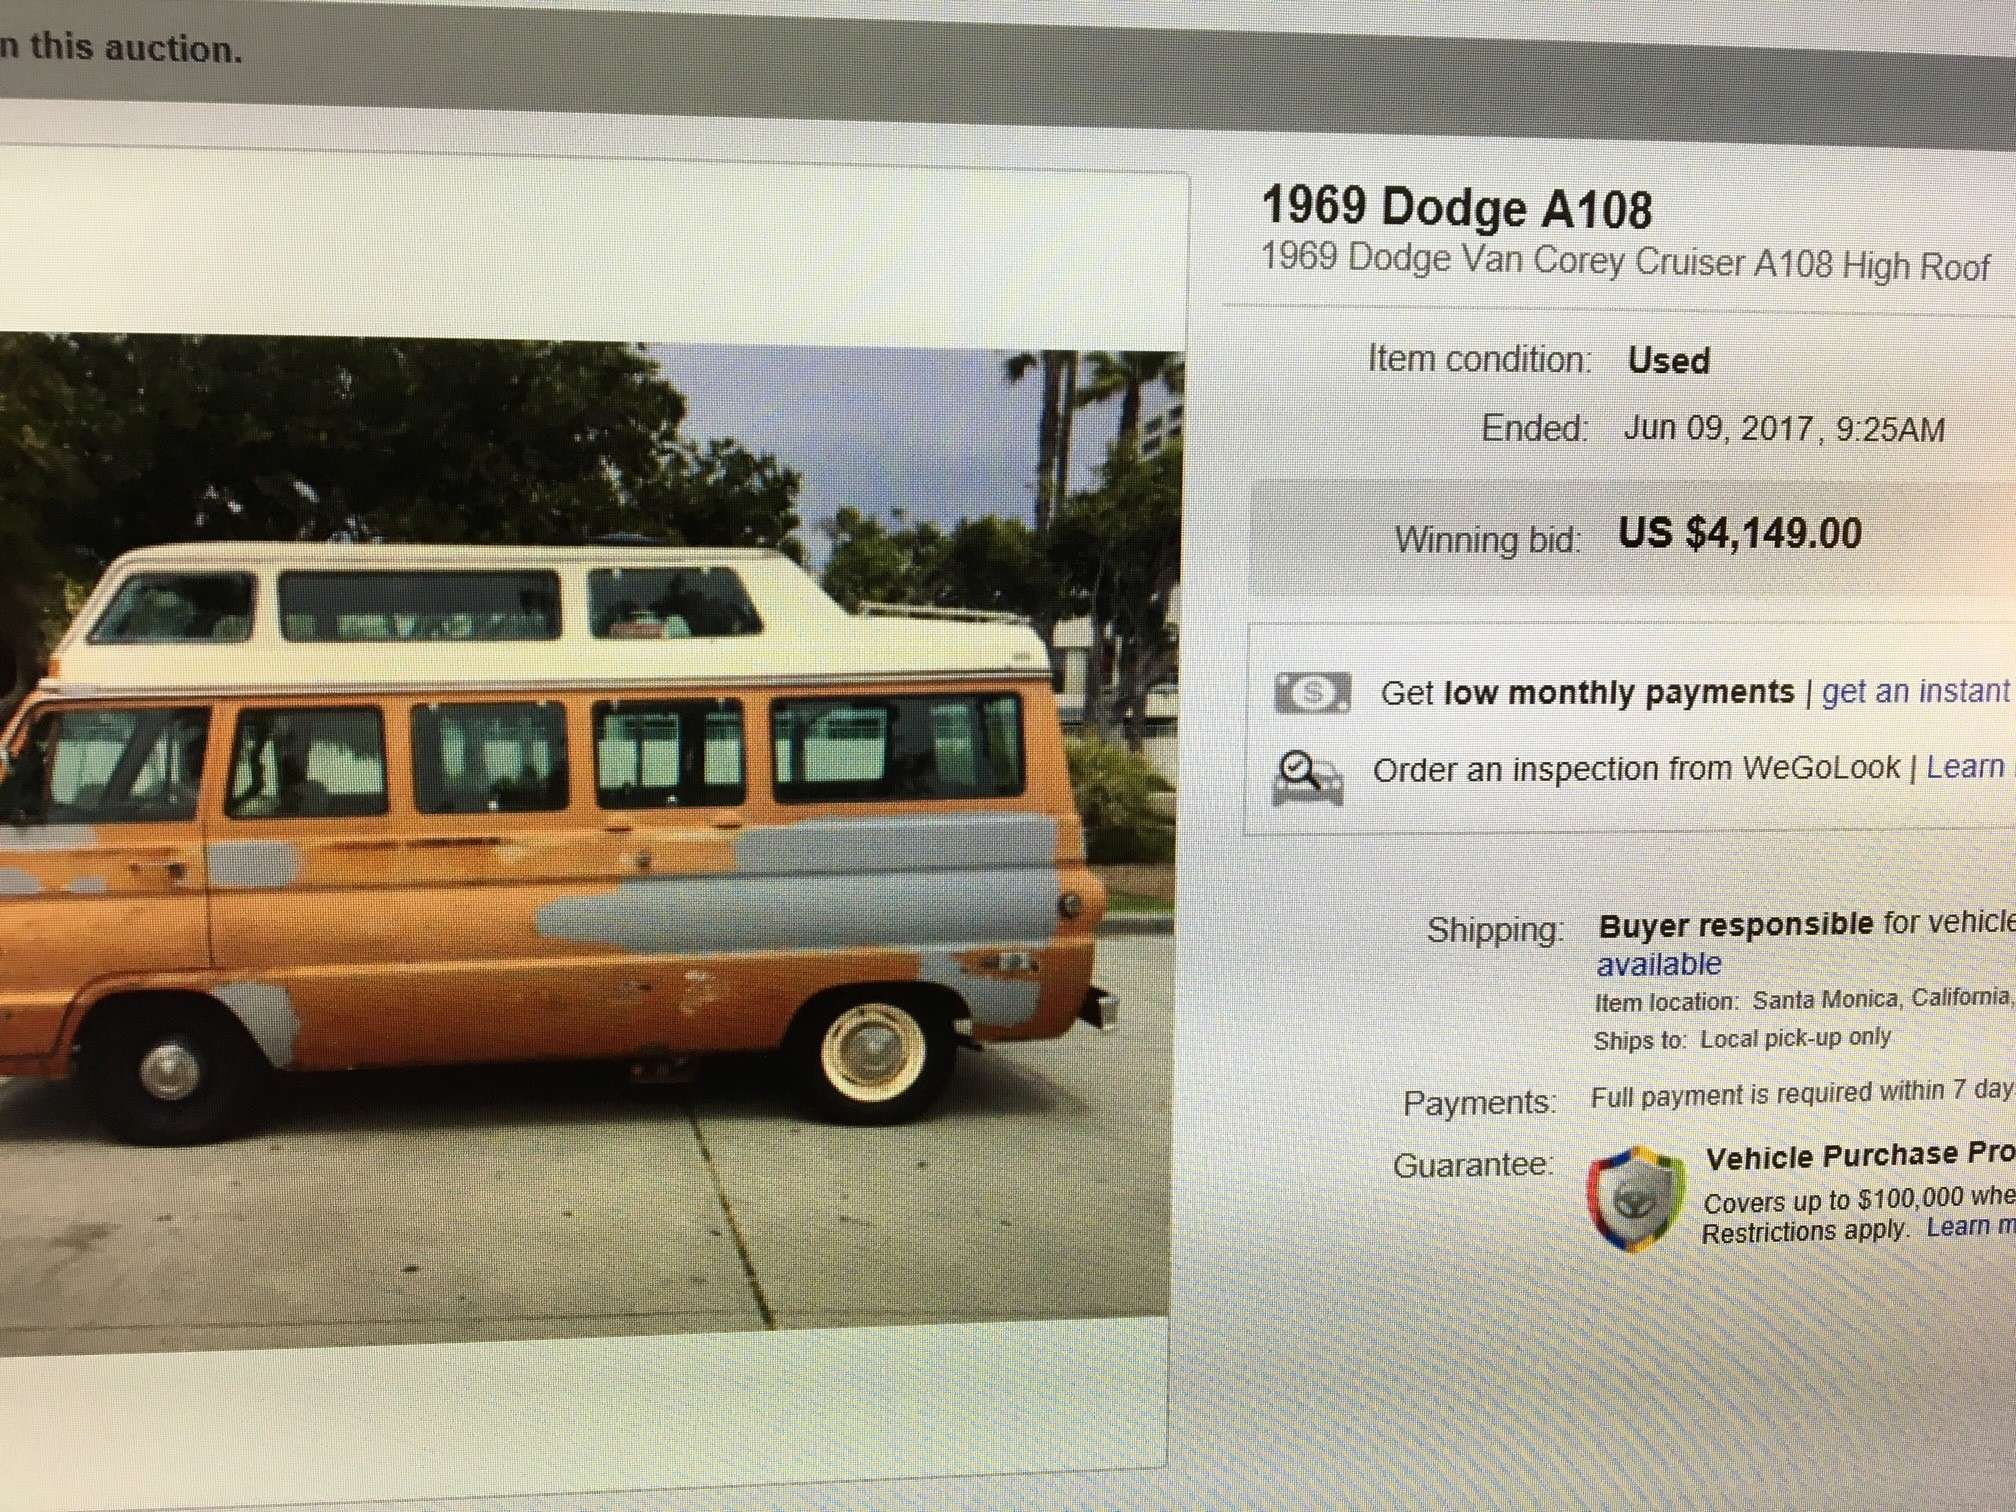 69 Dodge A108 Van Corey Cruiser - $9200 (CA) 69_cor10